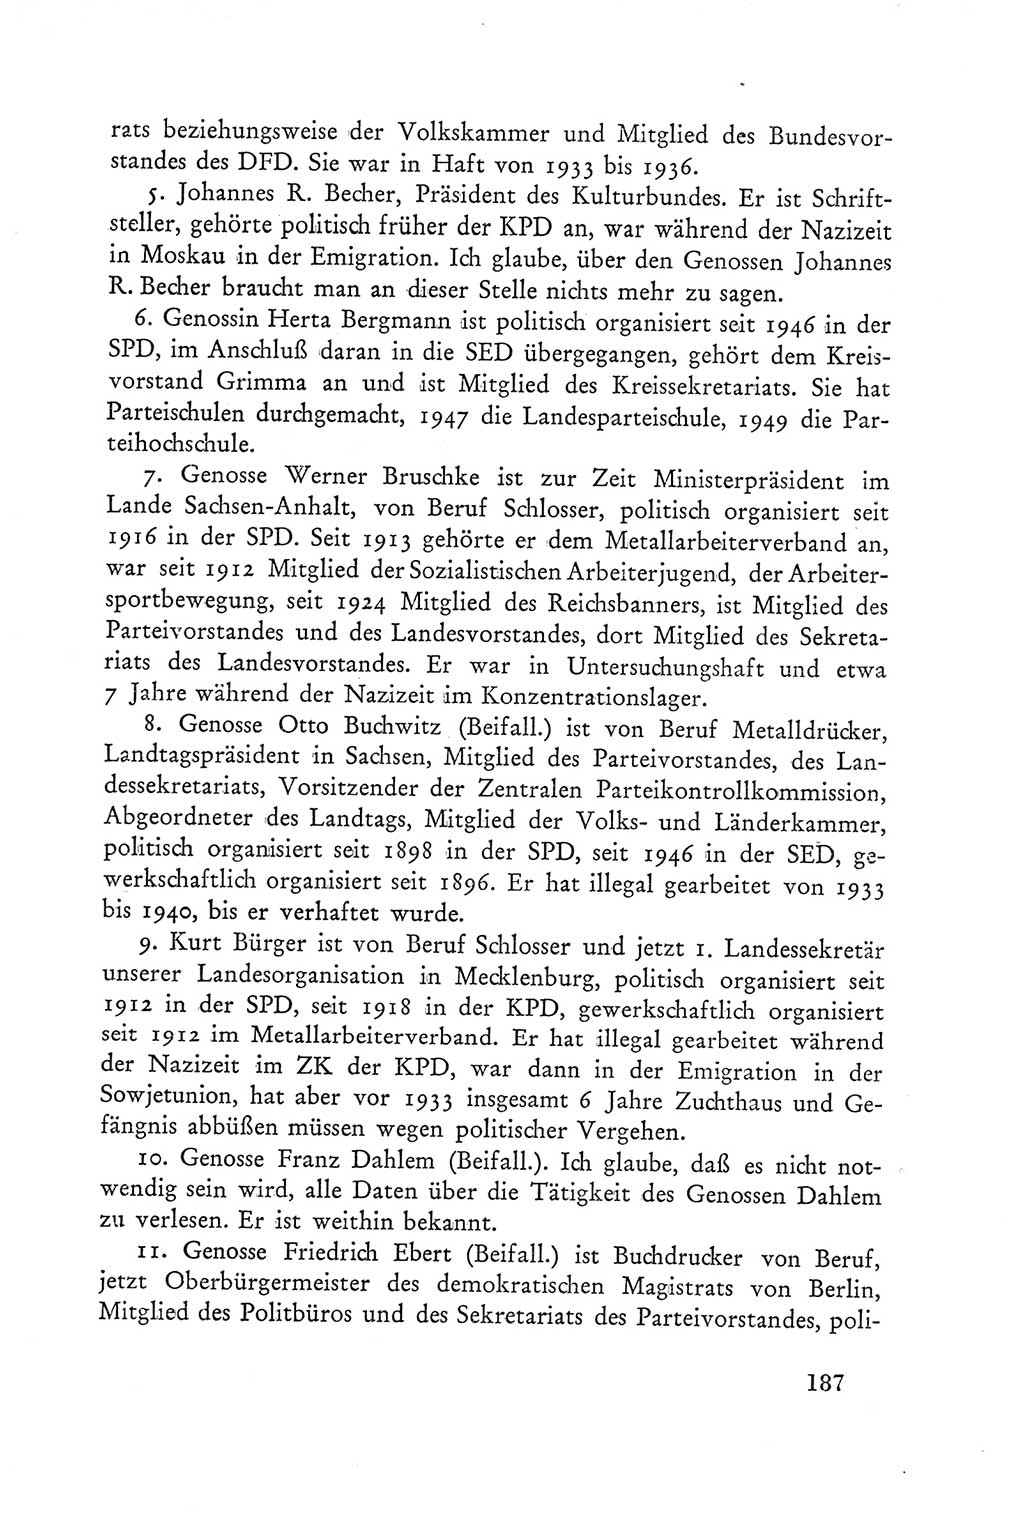 Protokoll der Verhandlungen des Ⅲ. Parteitages der Sozialistischen Einheitspartei Deutschlands (SED) [Deutsche Demokratische Republik (DDR)] 1950, Band 2, Seite 187 (Prot. Verh. Ⅲ. PT SED DDR 1950, Bd. 2, S. 187)